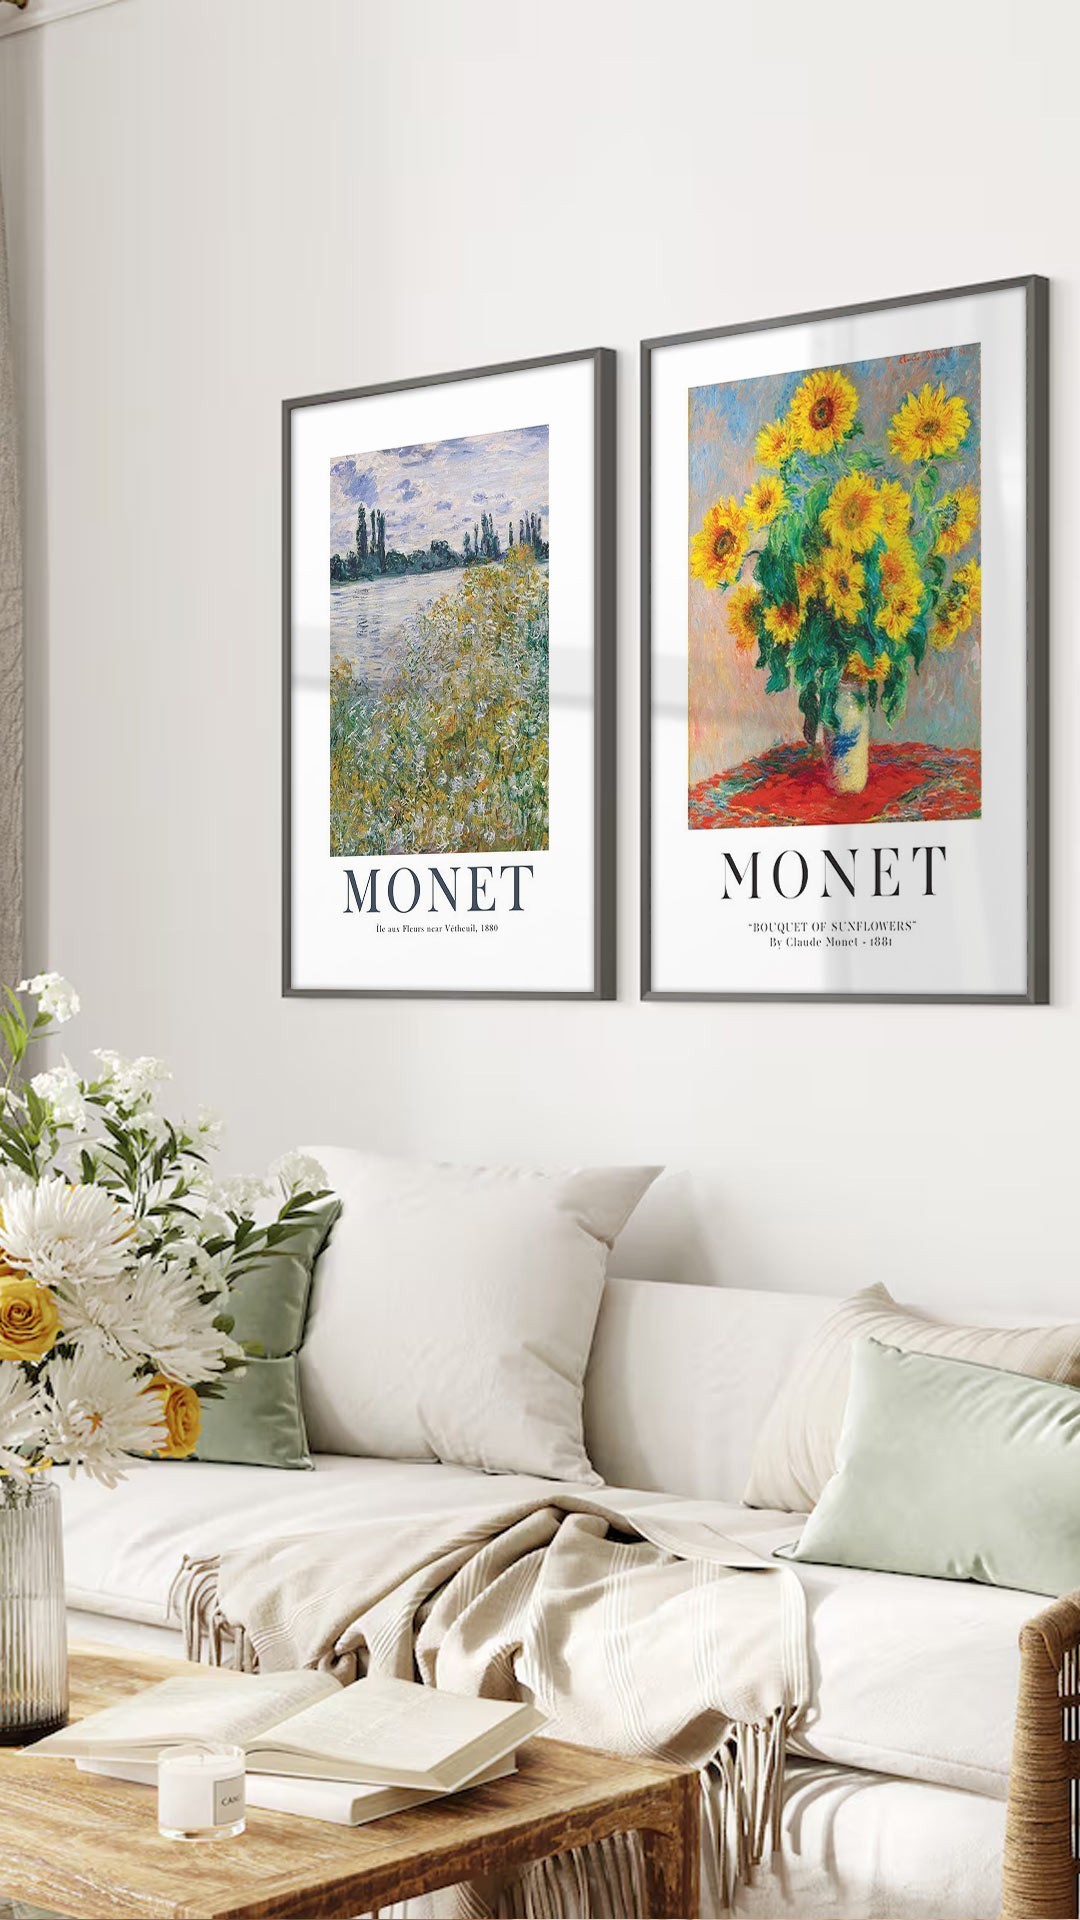 Αφίσες-Poster με έργα του Monet 